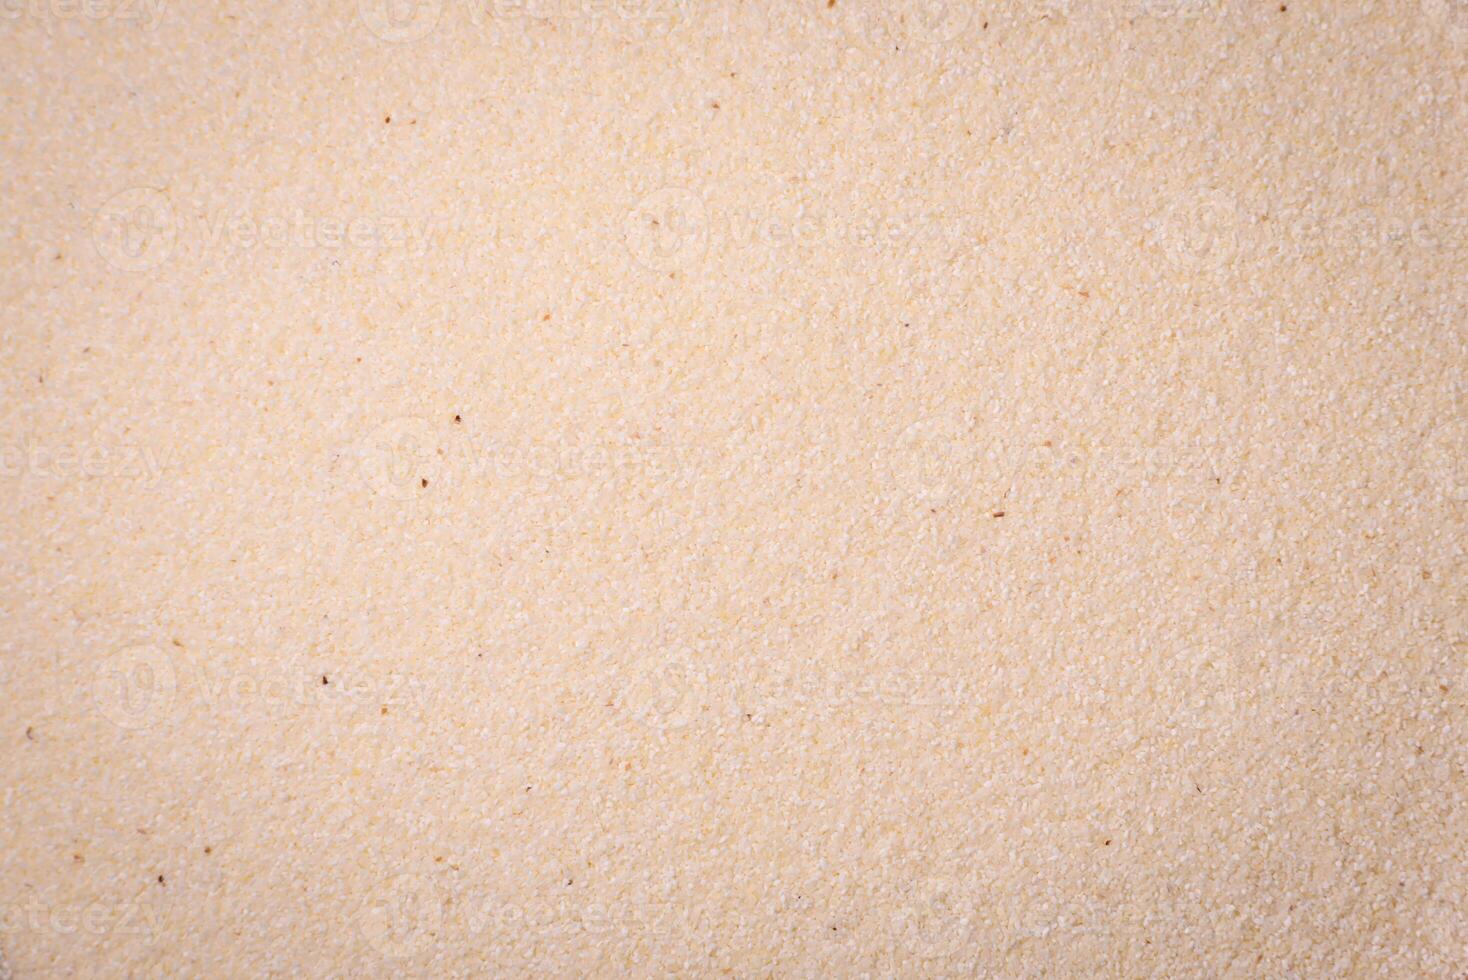 Semolina wheat grains are white in raw form photo